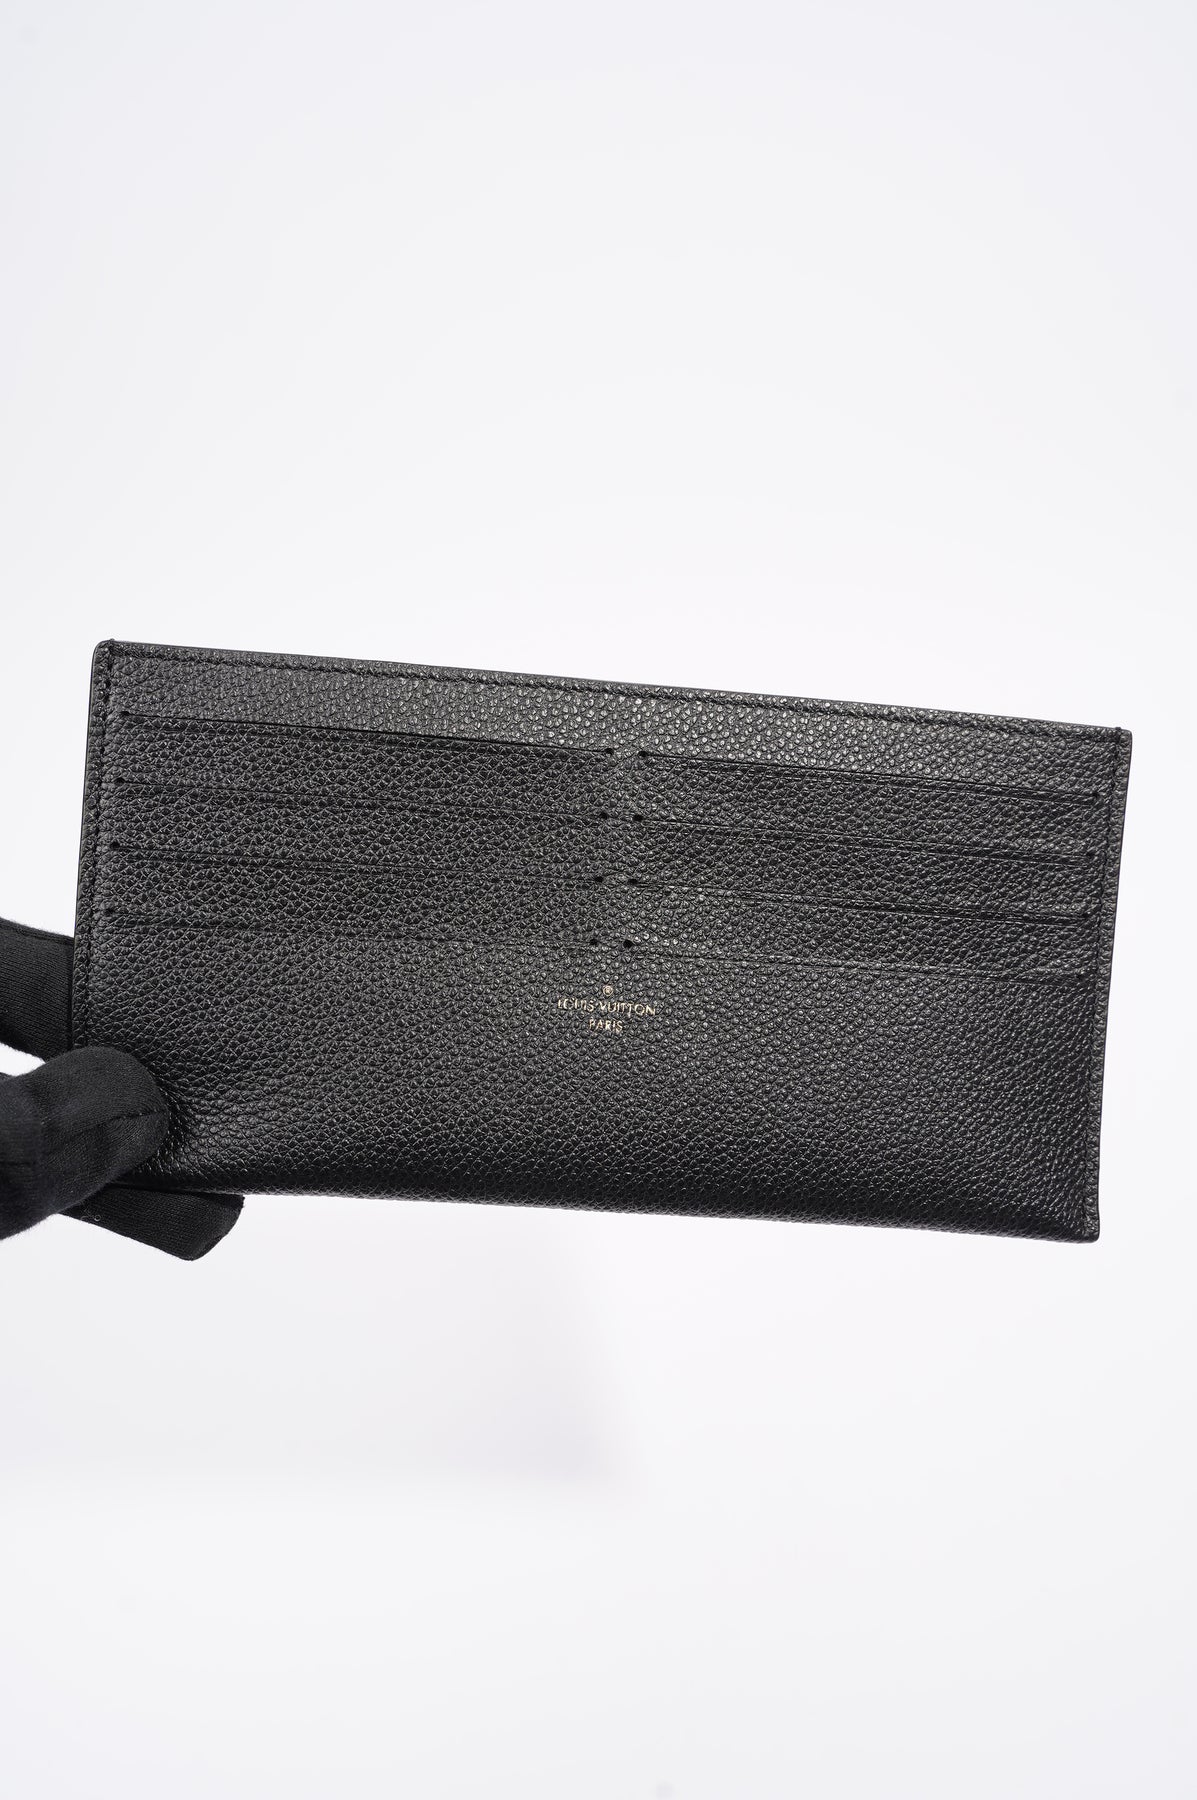 Louis Vuitton Black Monogram Empreinte Felicie Pochette, myGemma, NZ